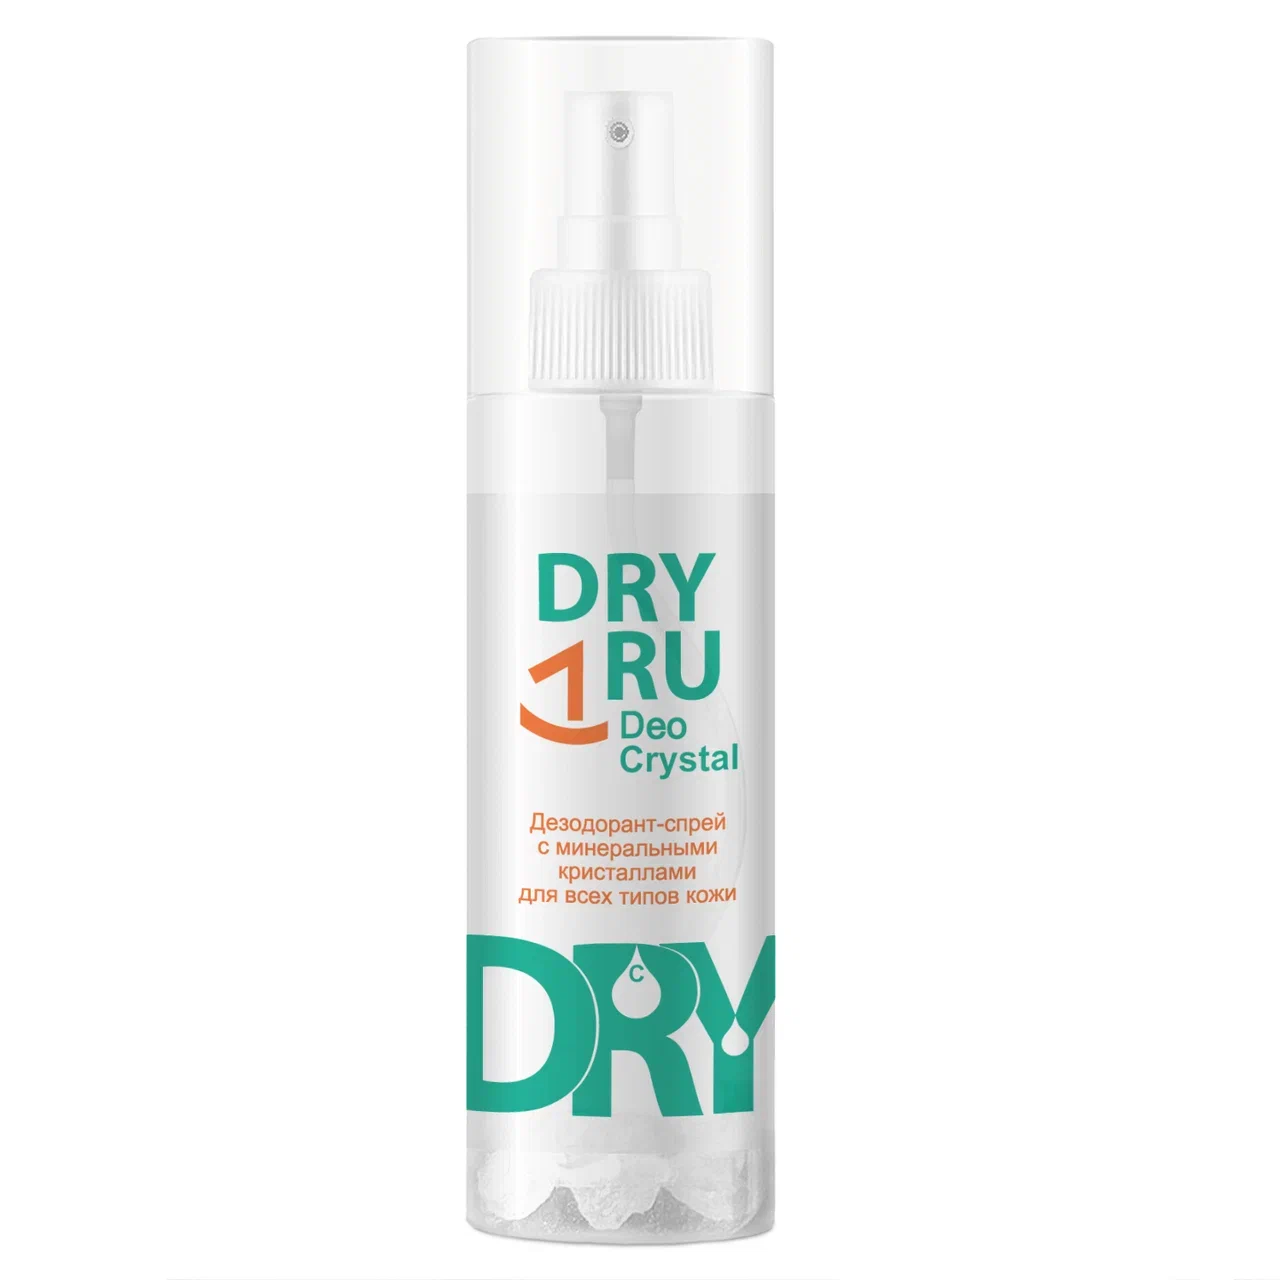 Дезодорант DRY RU Deo Crystal спрей, от пота и запаха, для подмышек, рук и ног 40 г doctor vic спрей нейтрализатор пятен и запаха животных апельсин